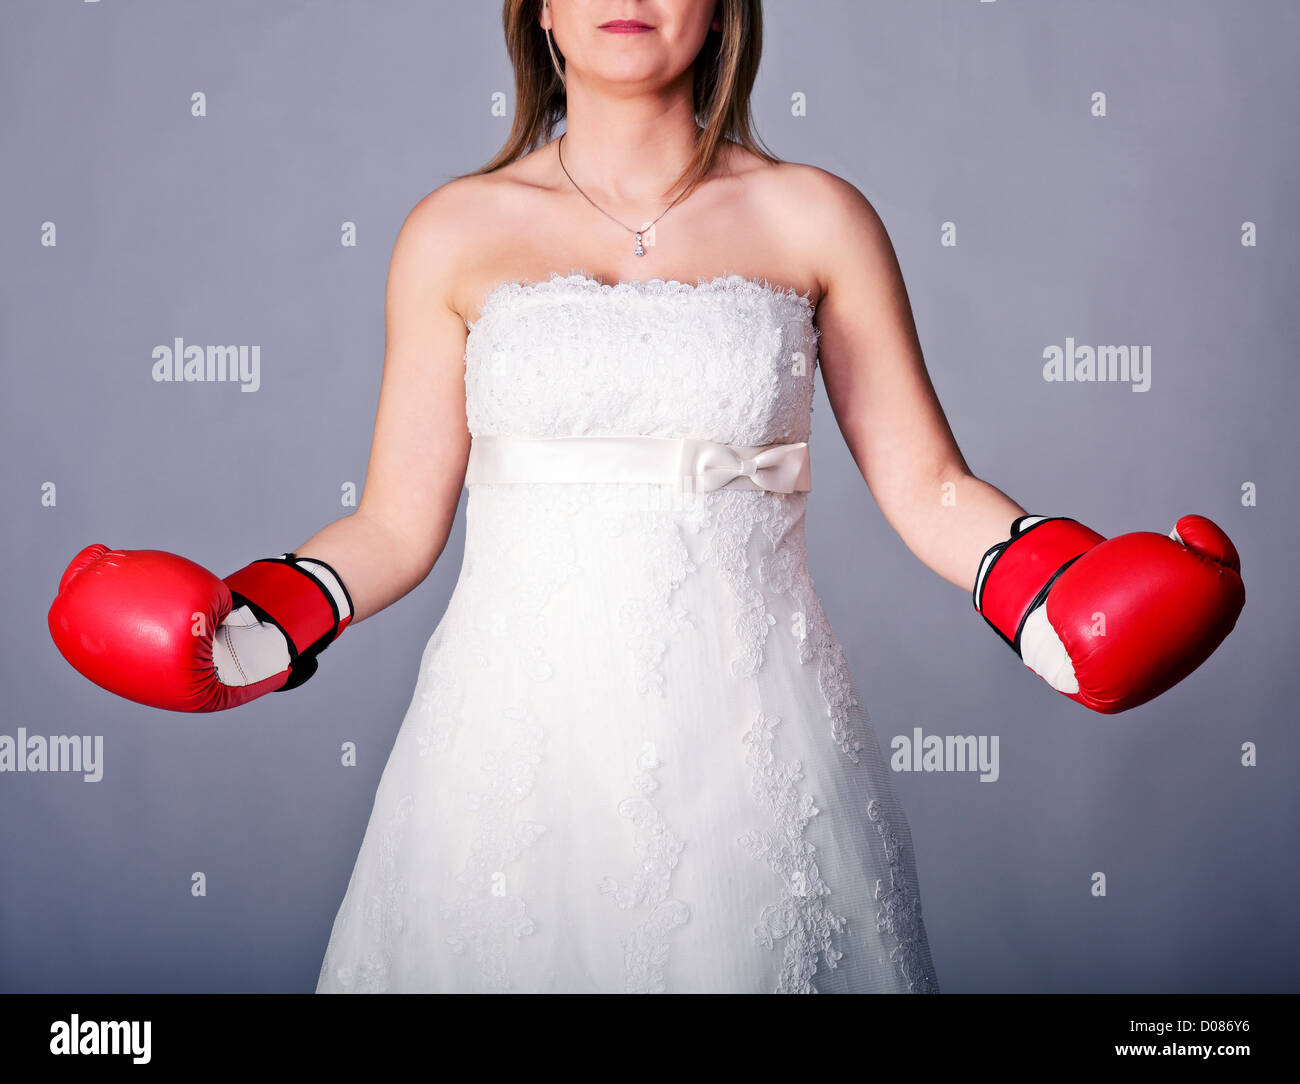 Détail de bride wearing boxing gloves Banque D'Images